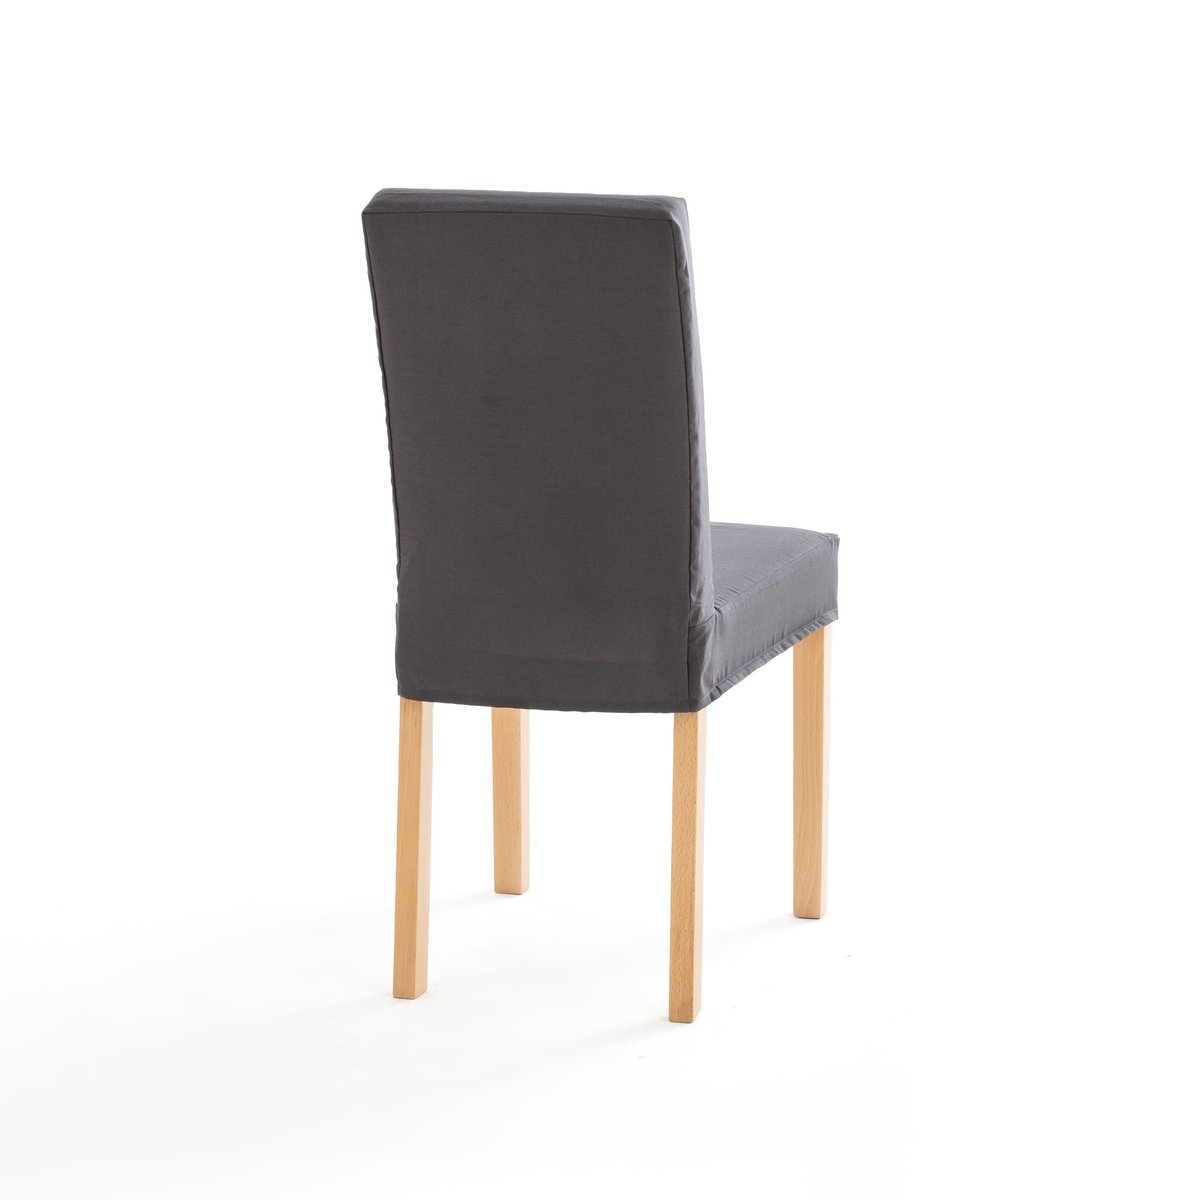 Чехол La Redoute На стул из хлопка DOMME единый размер серый - фото 2